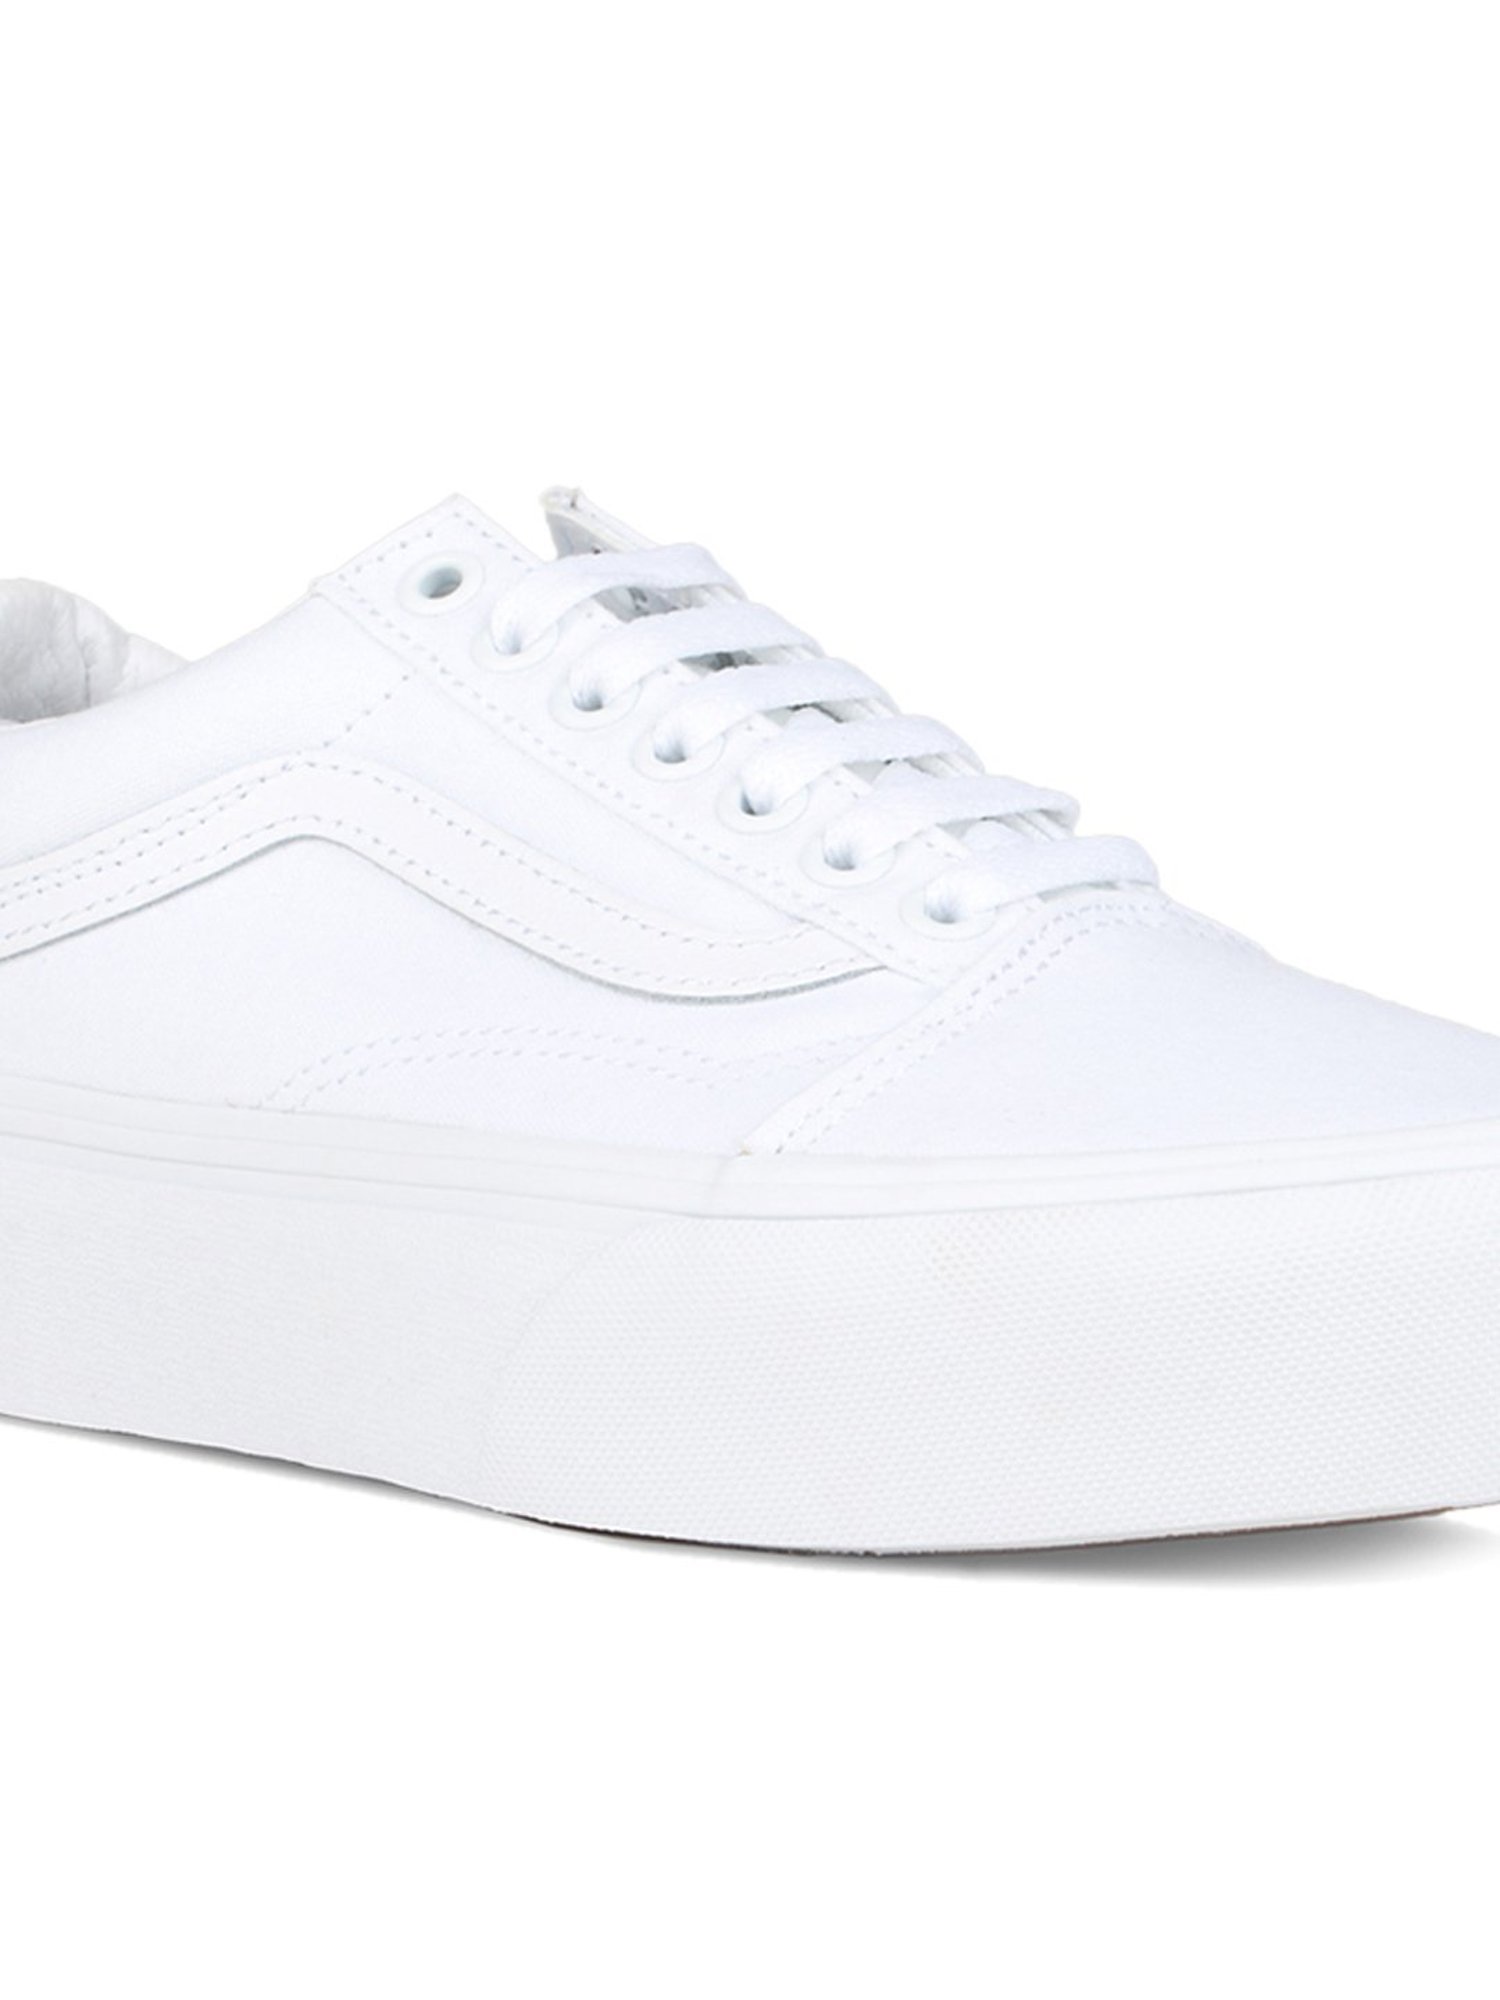 Buy Vans Old Skool White Sneakers 